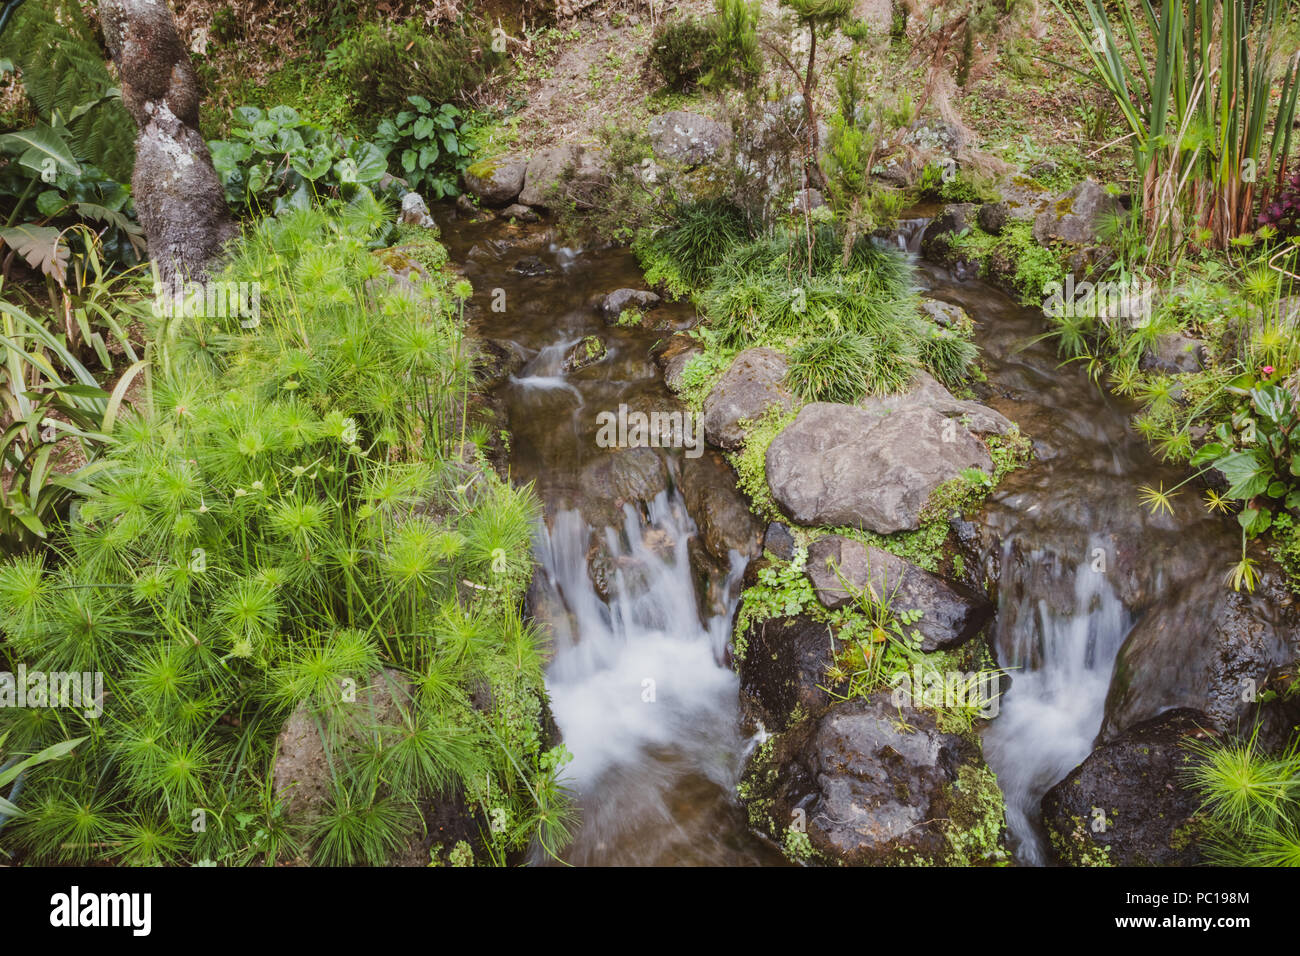 Natur reich an Thermalwasser, Mineralien und kräftigen Farben von überall, Dona Beija, Insel Sao Miguel, Azoren. Stockfoto